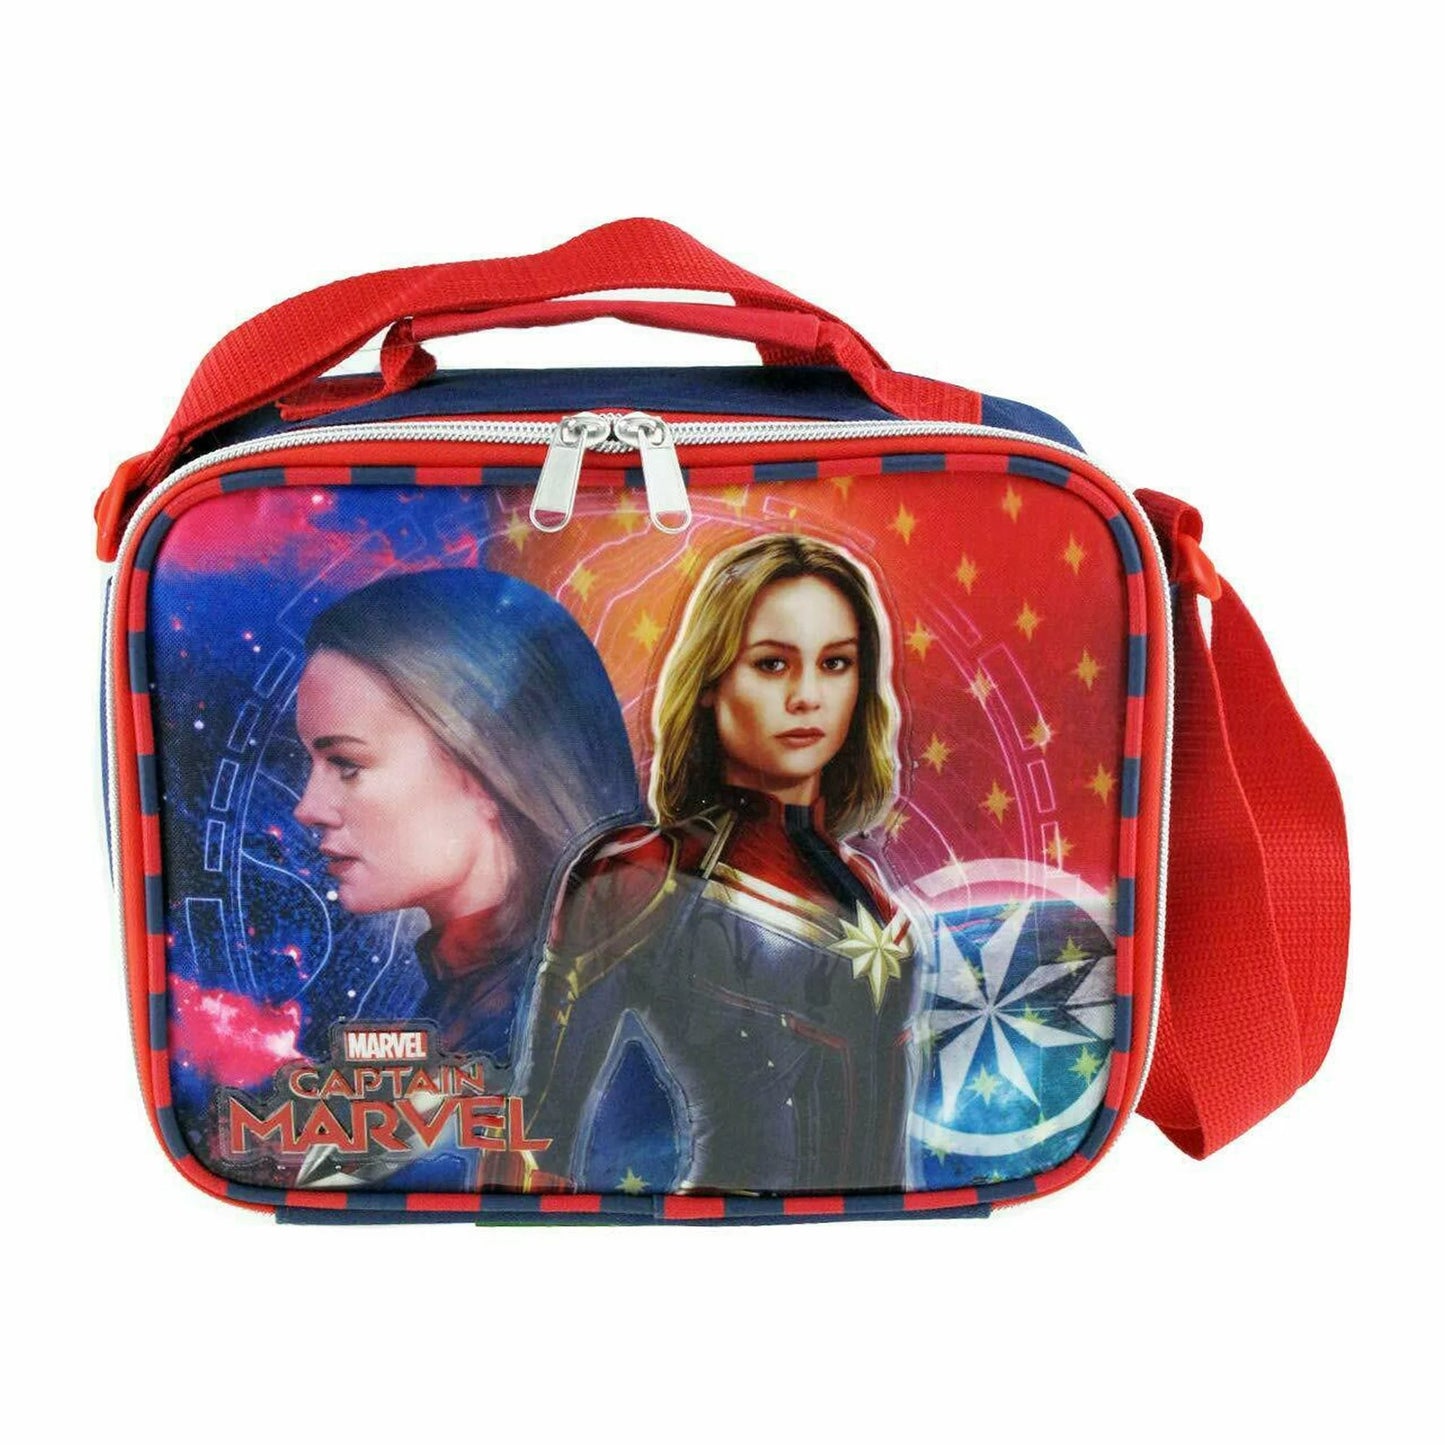 Lunch Bag - Marvel - Captain Marvel - Avengers Lunch Box